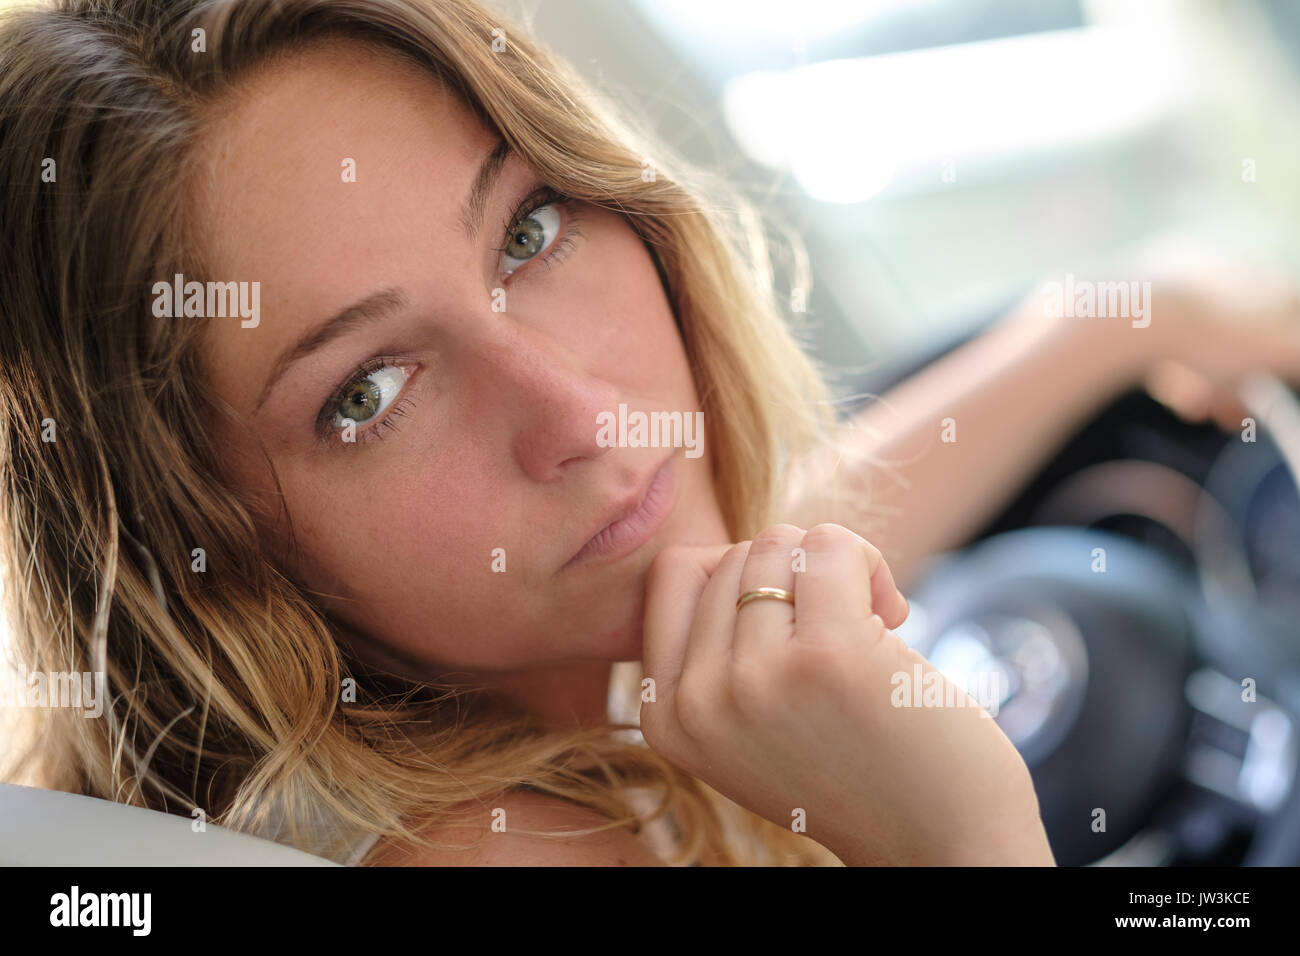 Ritratto di donna in auto Foto Stock